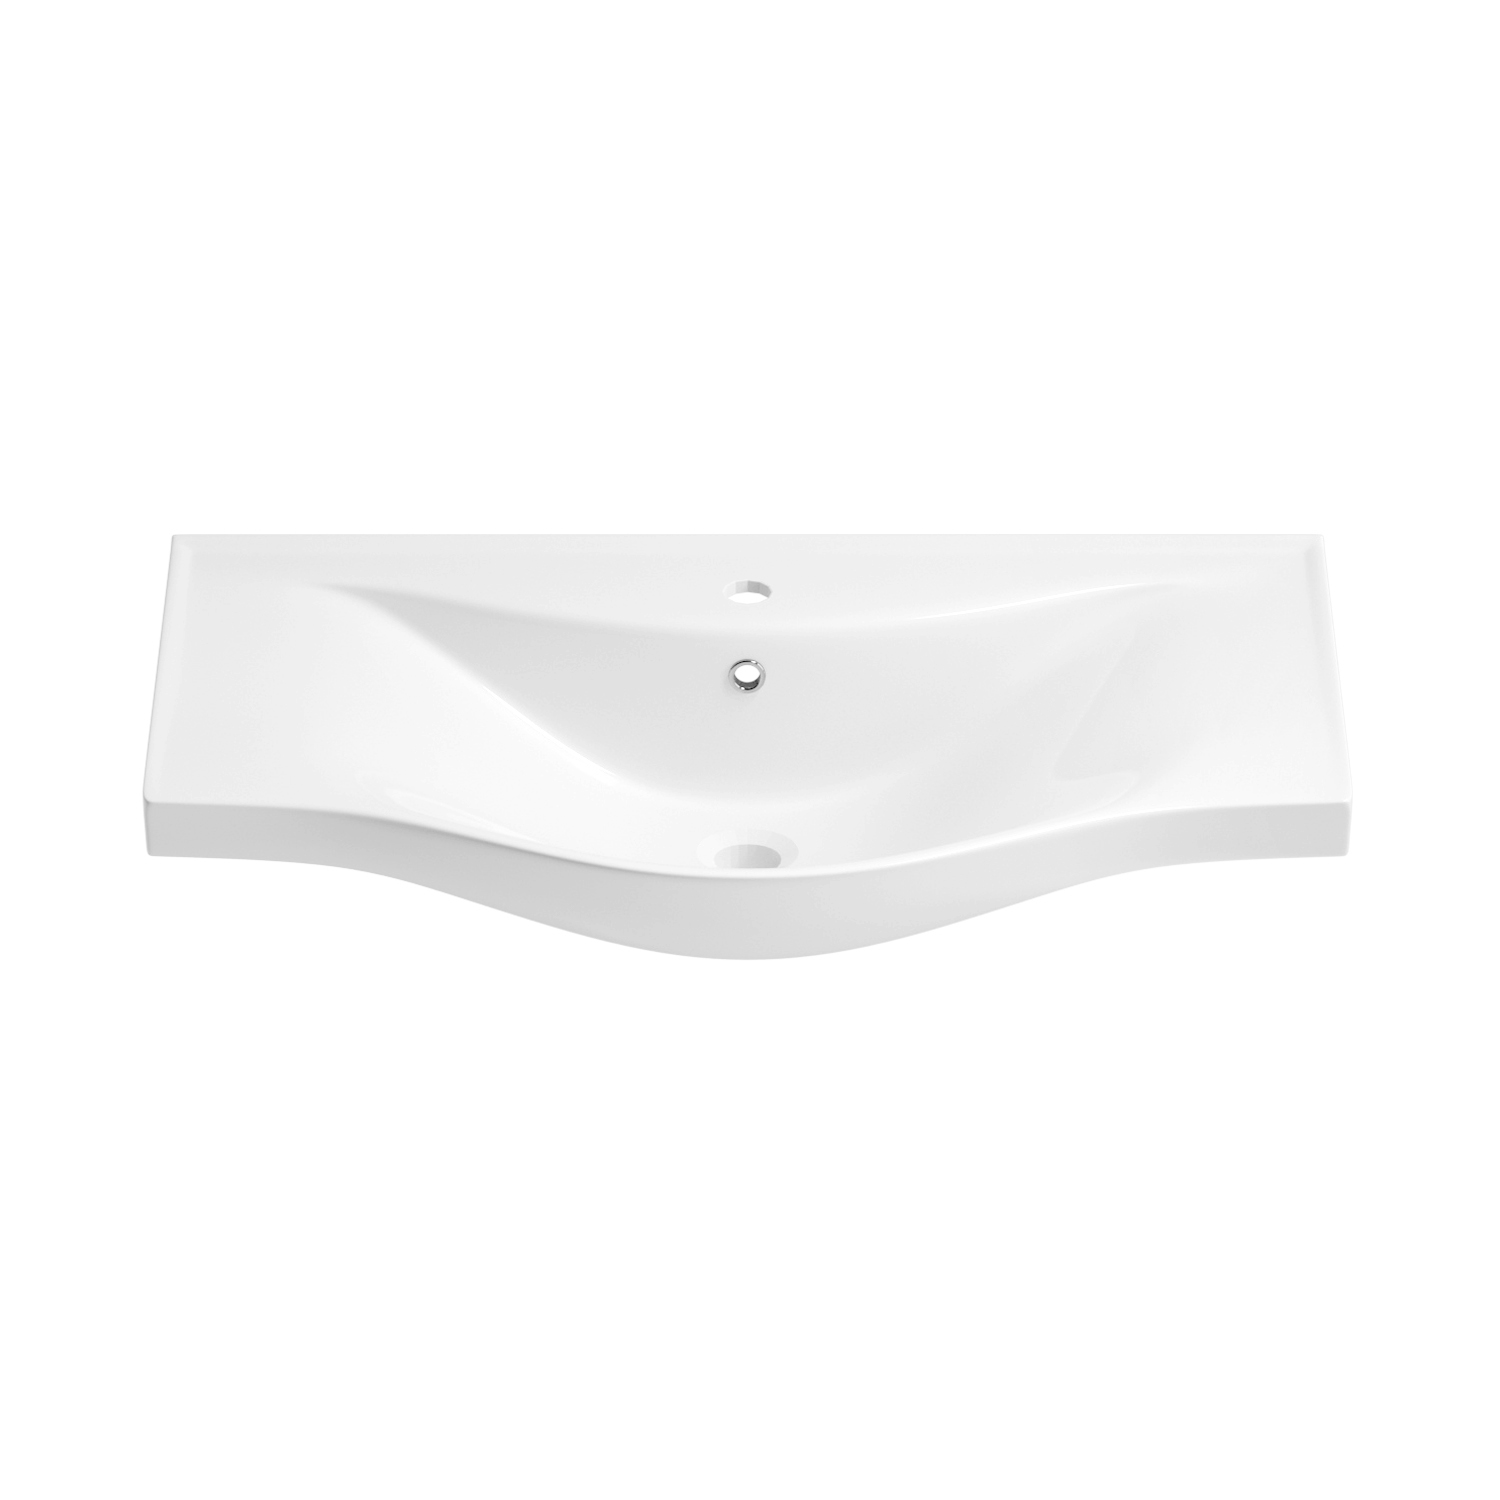 Подвесная раковина Wellsee Bisou 151206000, ширина 75 см, глянцевый белый душевая система ростовская мануфактура сантехники